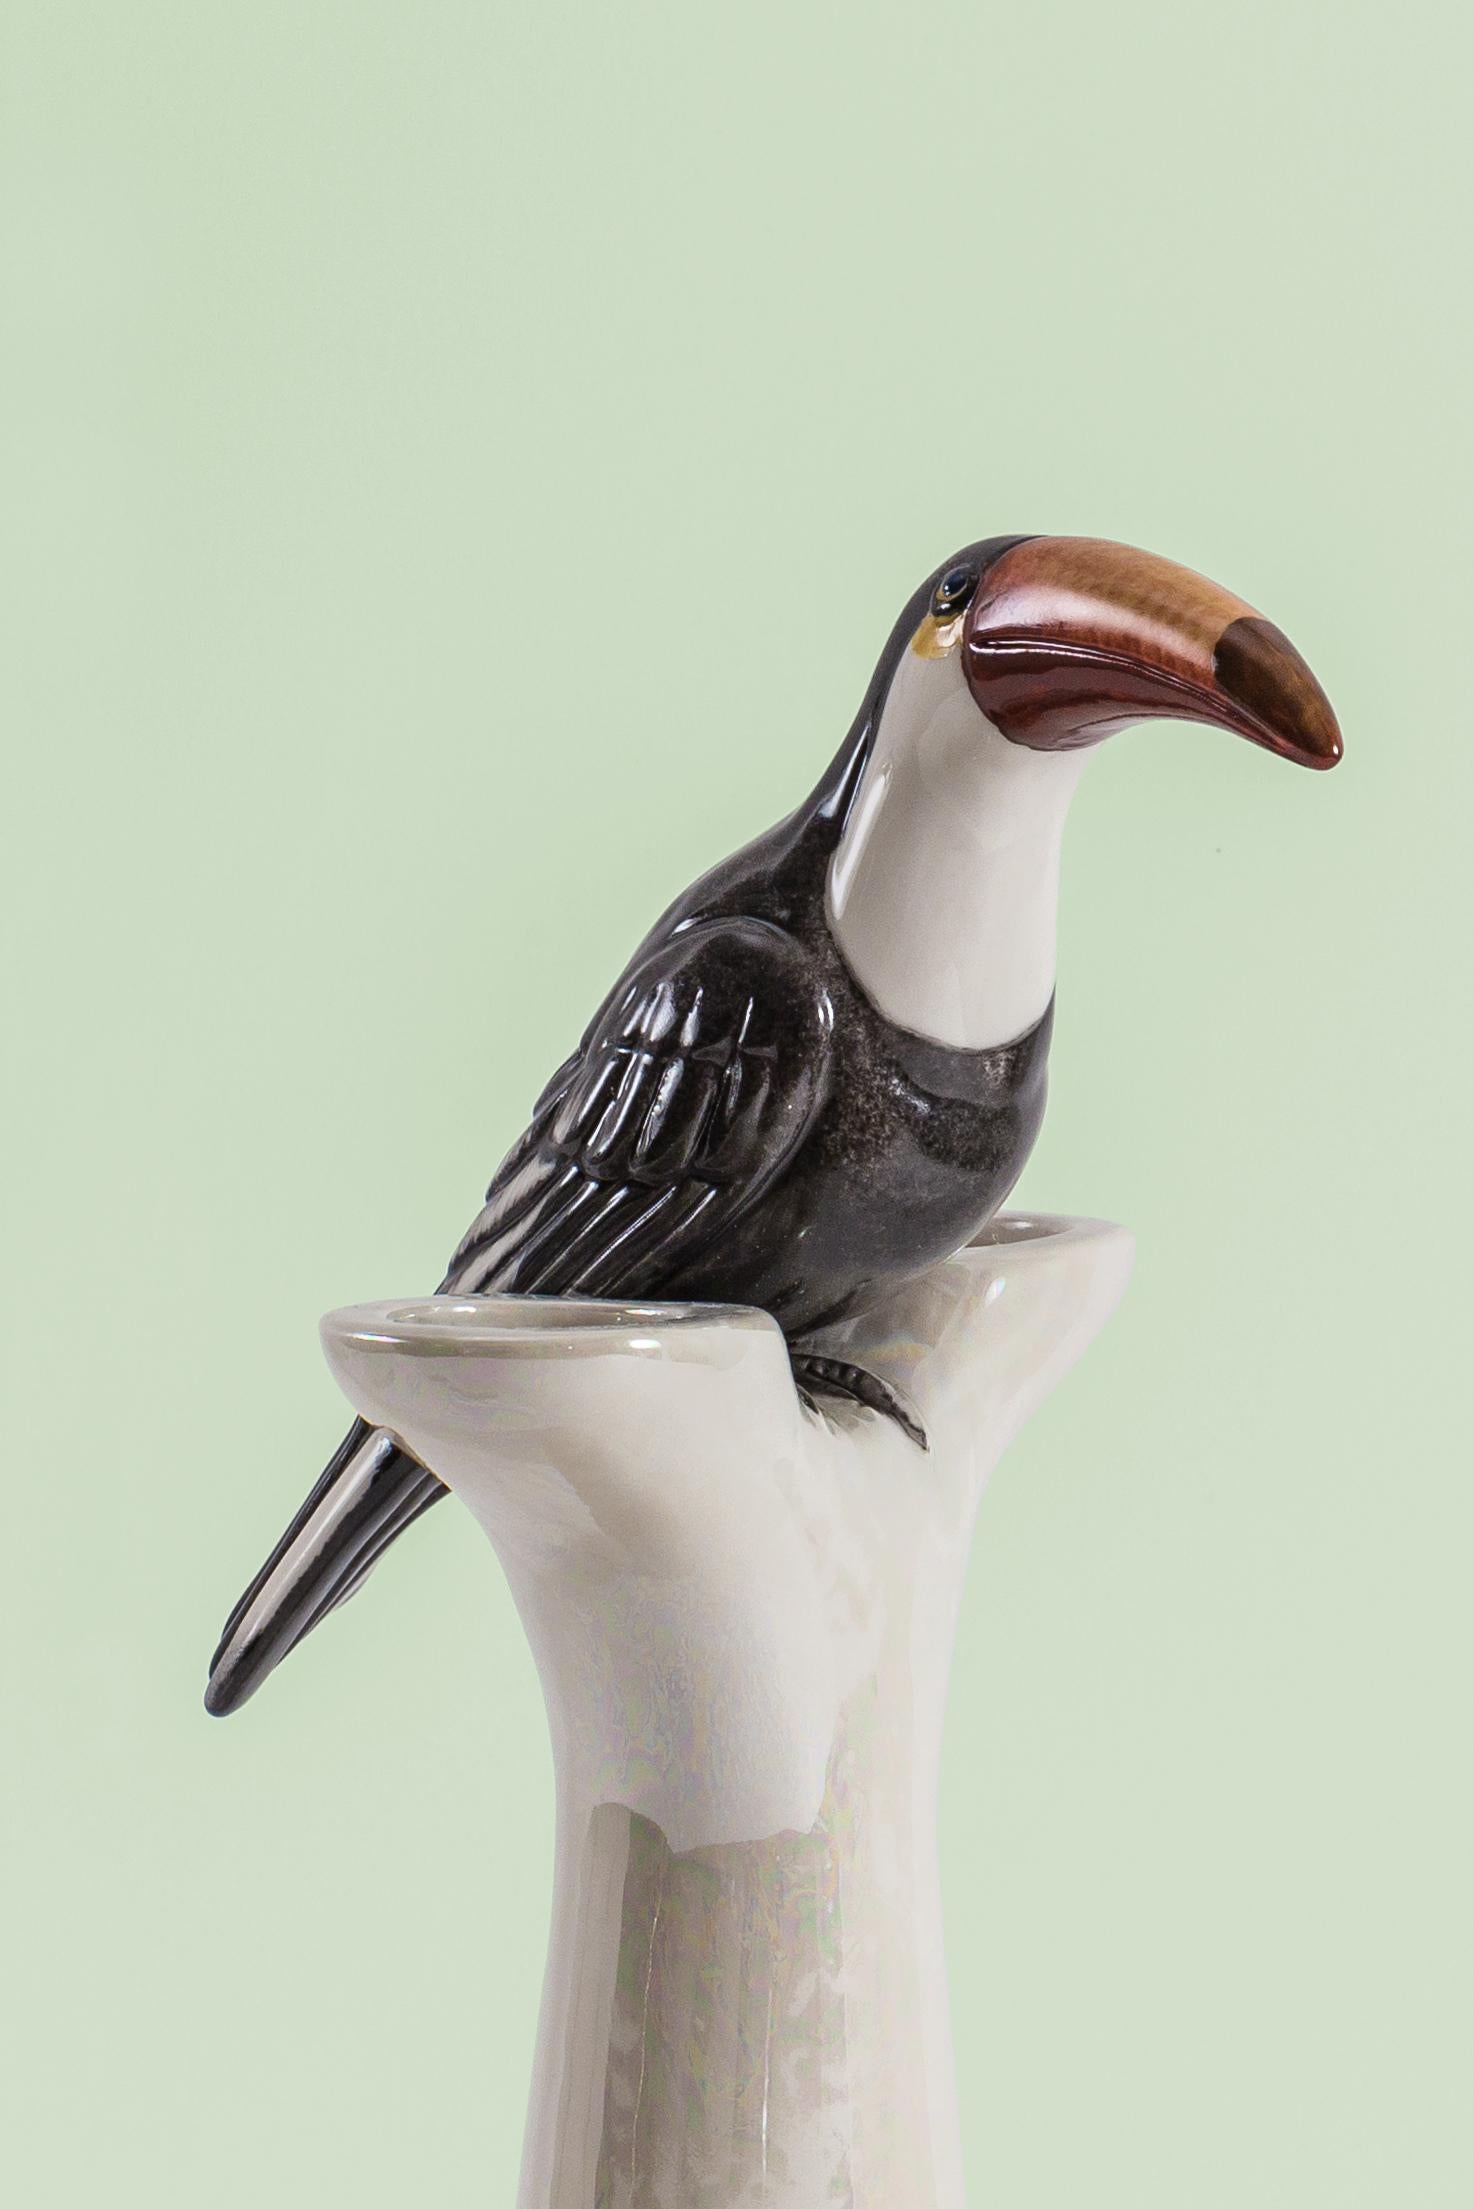 Cette sculpture en porcelaine italienne fait partie du Grand Tour de Vito Nesta. Réalisé en porcelaine de Capodimonte avec une finition brillante et irisée, ce double bougeoir est agrémenté d'un toucan peint à la main.